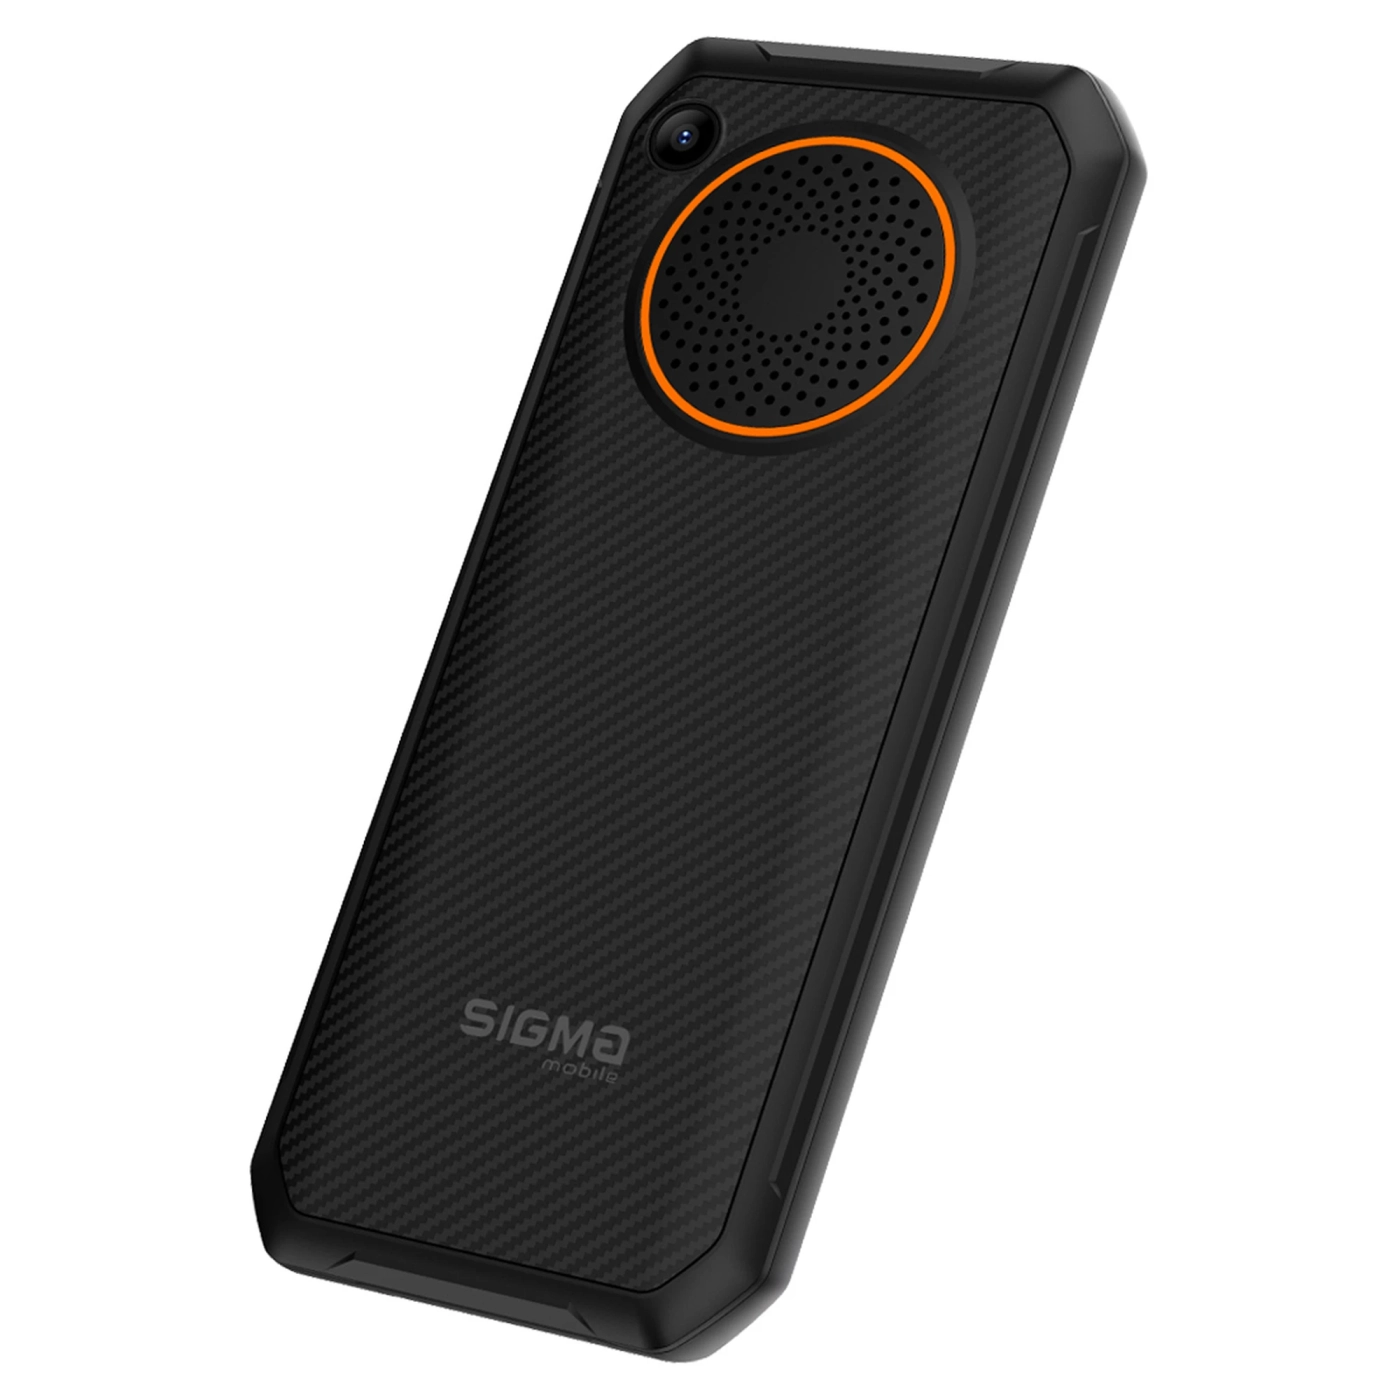 Купить Мобильный телефон Sigma X-style 310 Force Type-C Black Orange (4827798855126) - фото 5